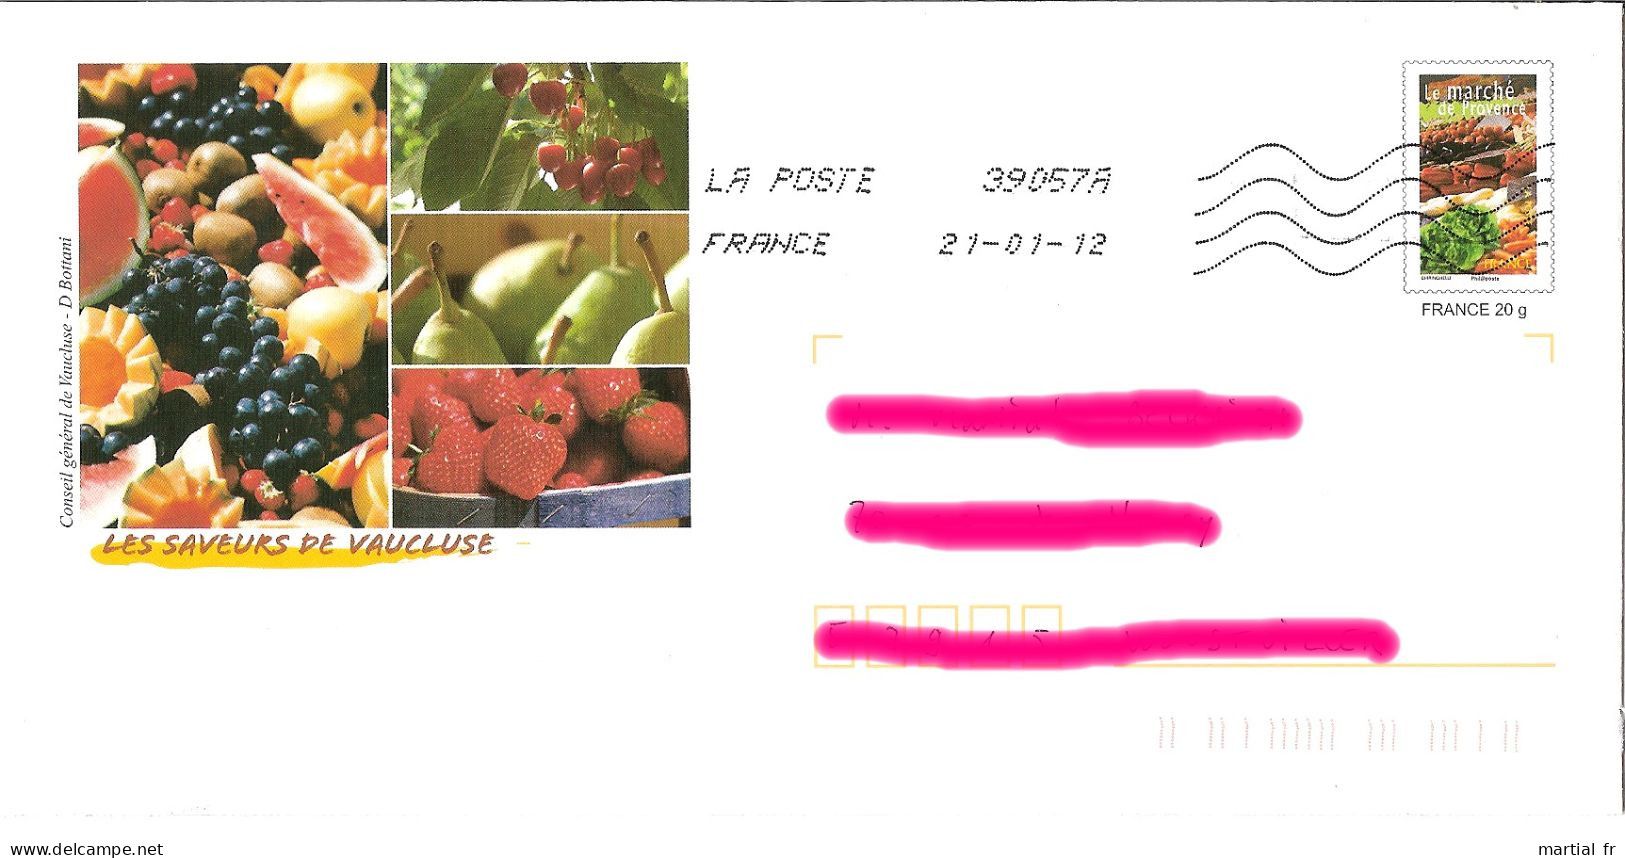 PAP FRANCE FRUIT FRUCHT OBST VAUCLUSE RAISIN PASTEQUE MELON CERISE POIRE FRAISE Marché Provence FRUIT Grape WATER MELON - Fruits